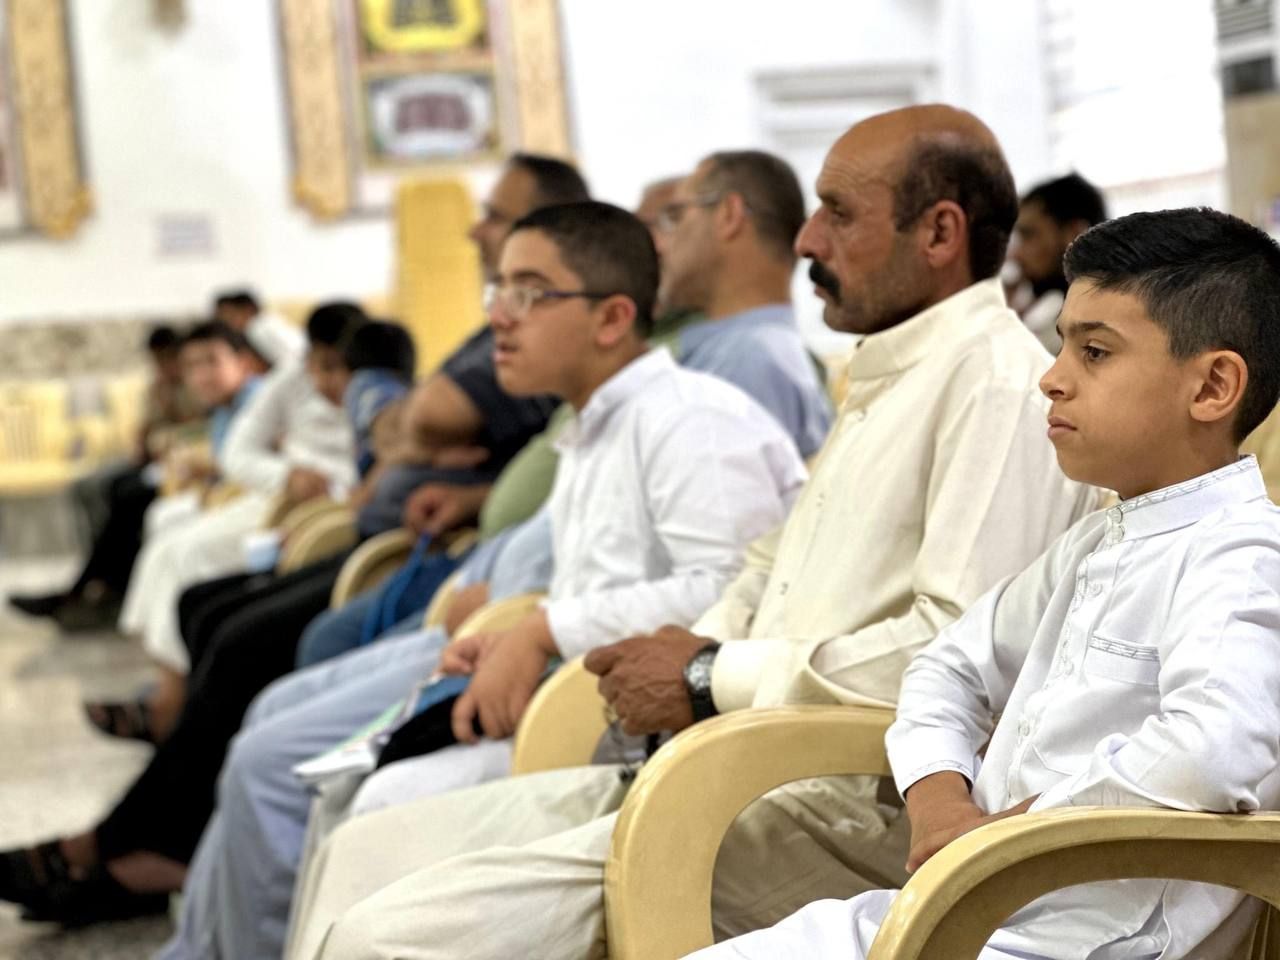 المَجمَع العلميّ يطلق مسابقة الغدير القرآنية بنسختها الثانية في قضاء الهندية